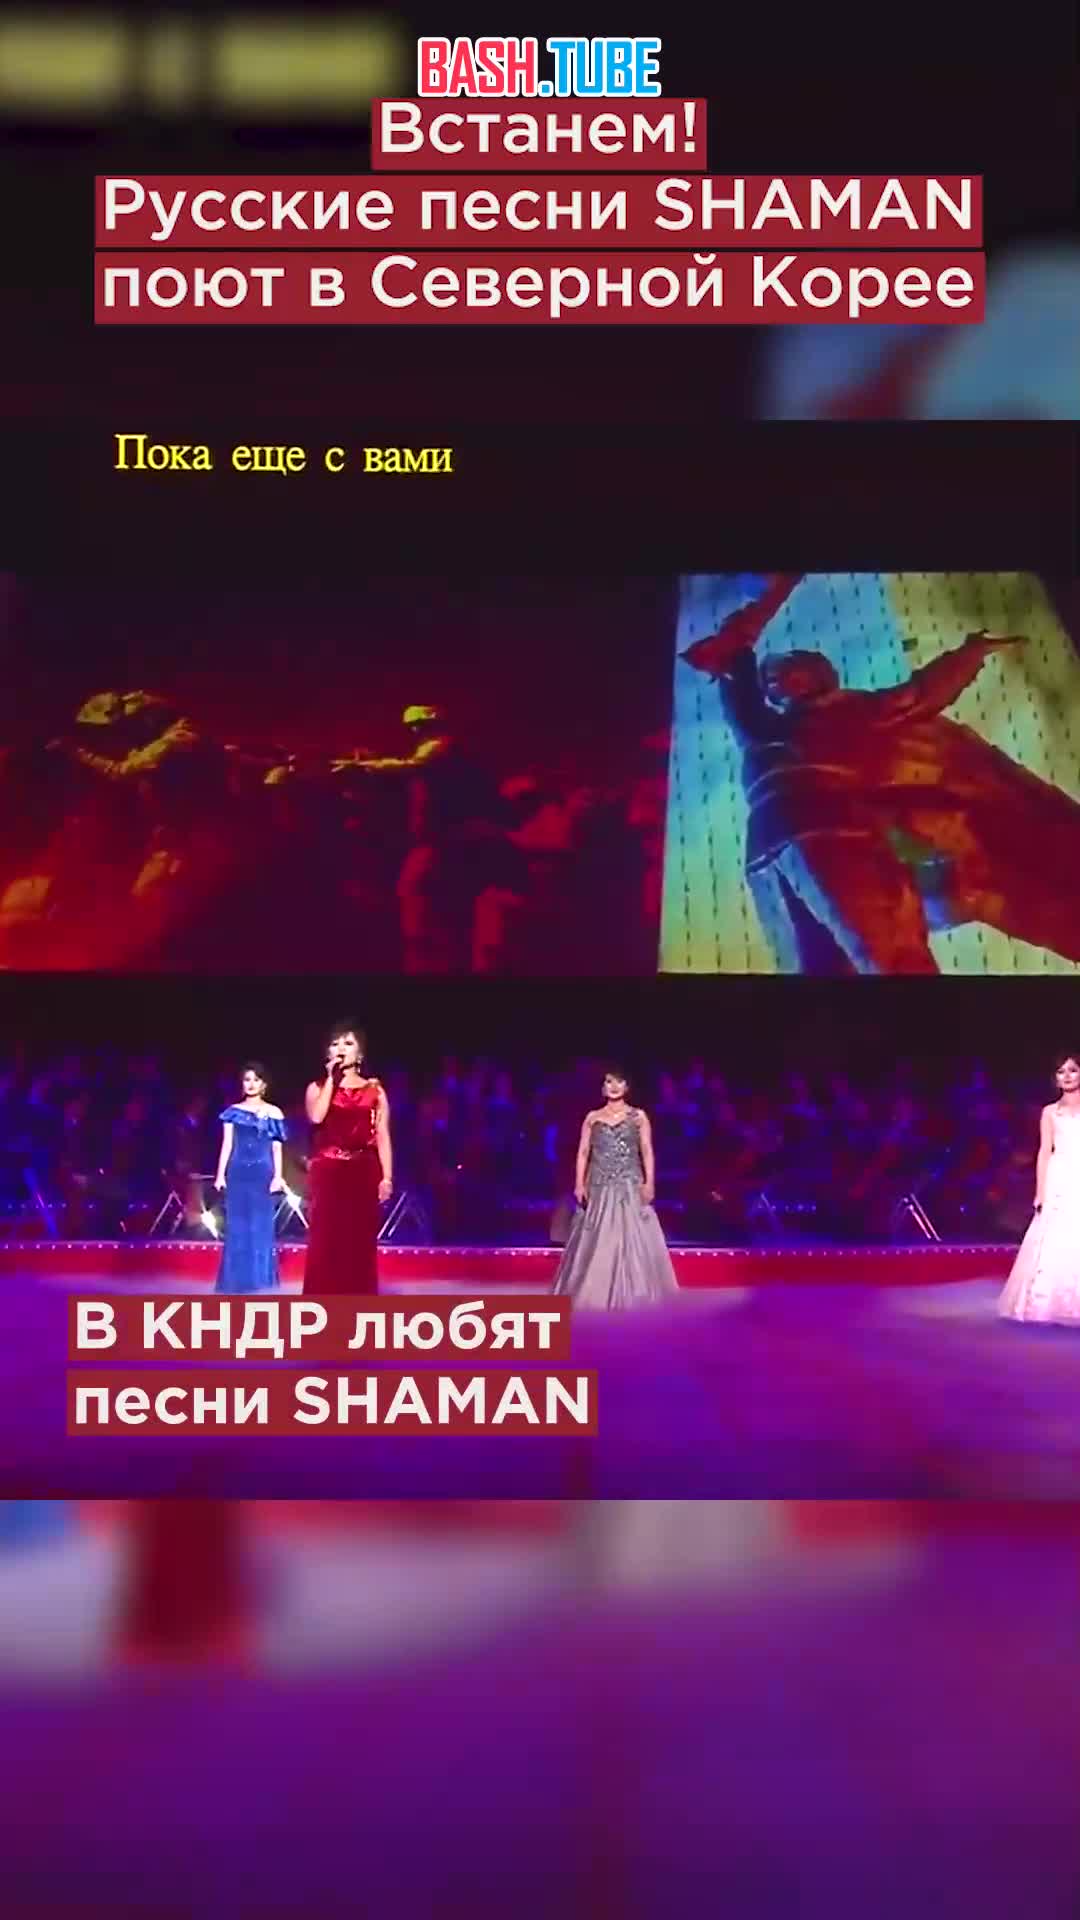  Встанем! Русские песни SHAMAN поют в Северной Корее